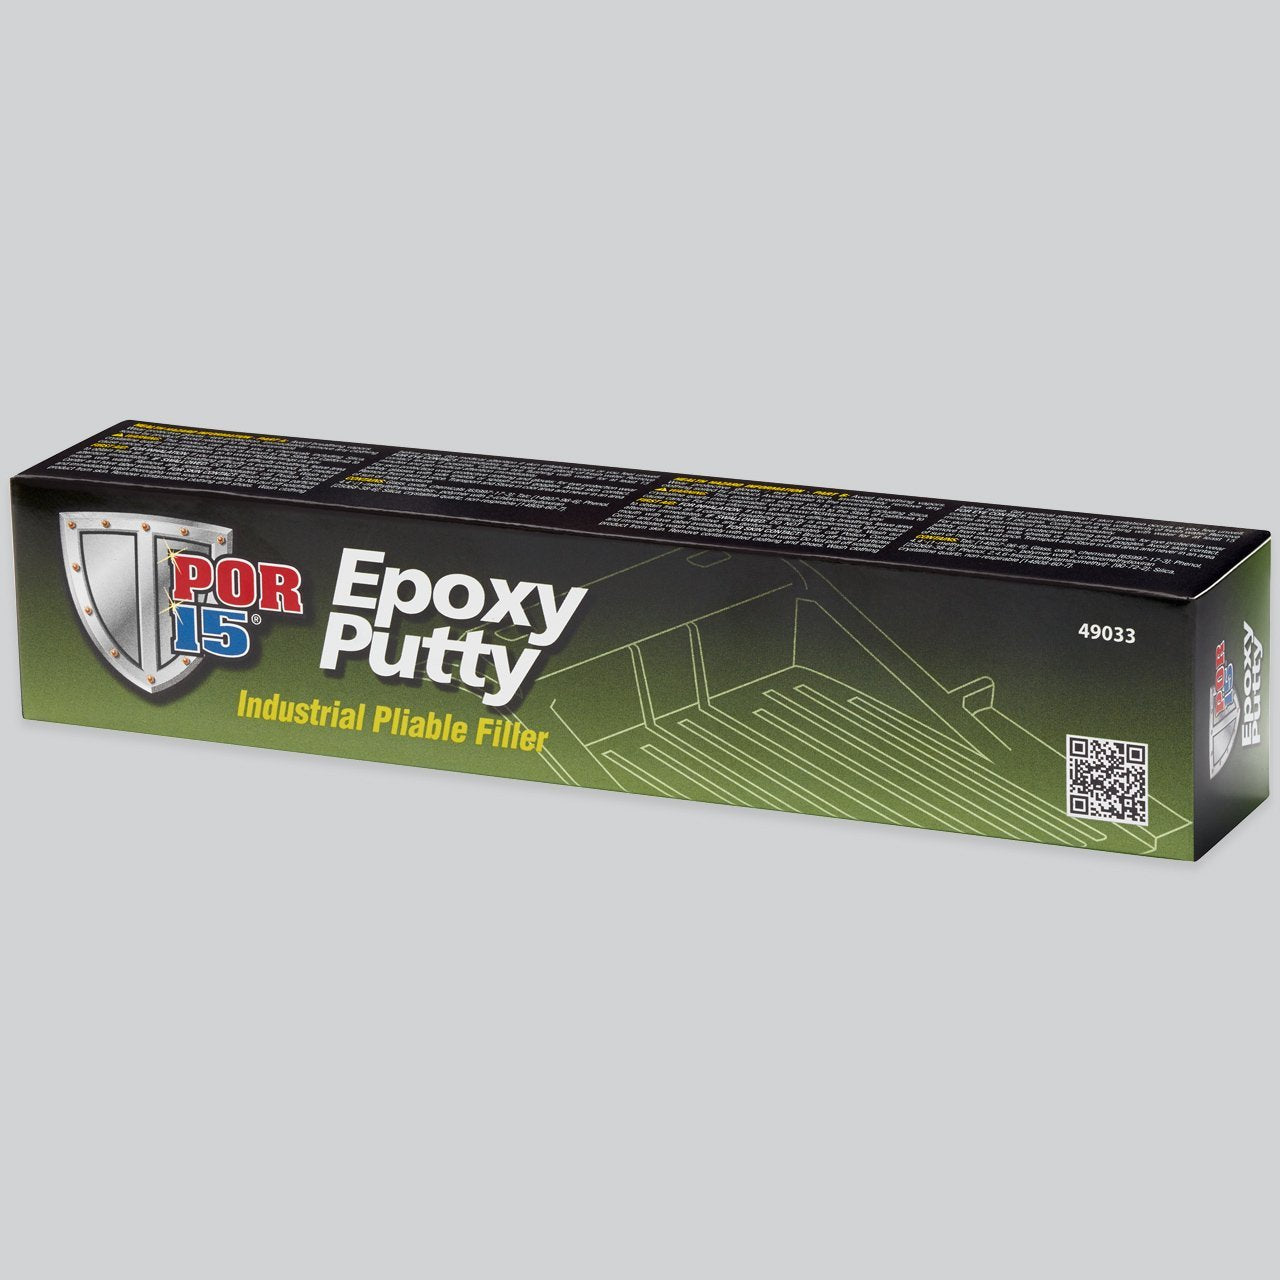 POR-15 49033 1 lbs. Epoxy Putty